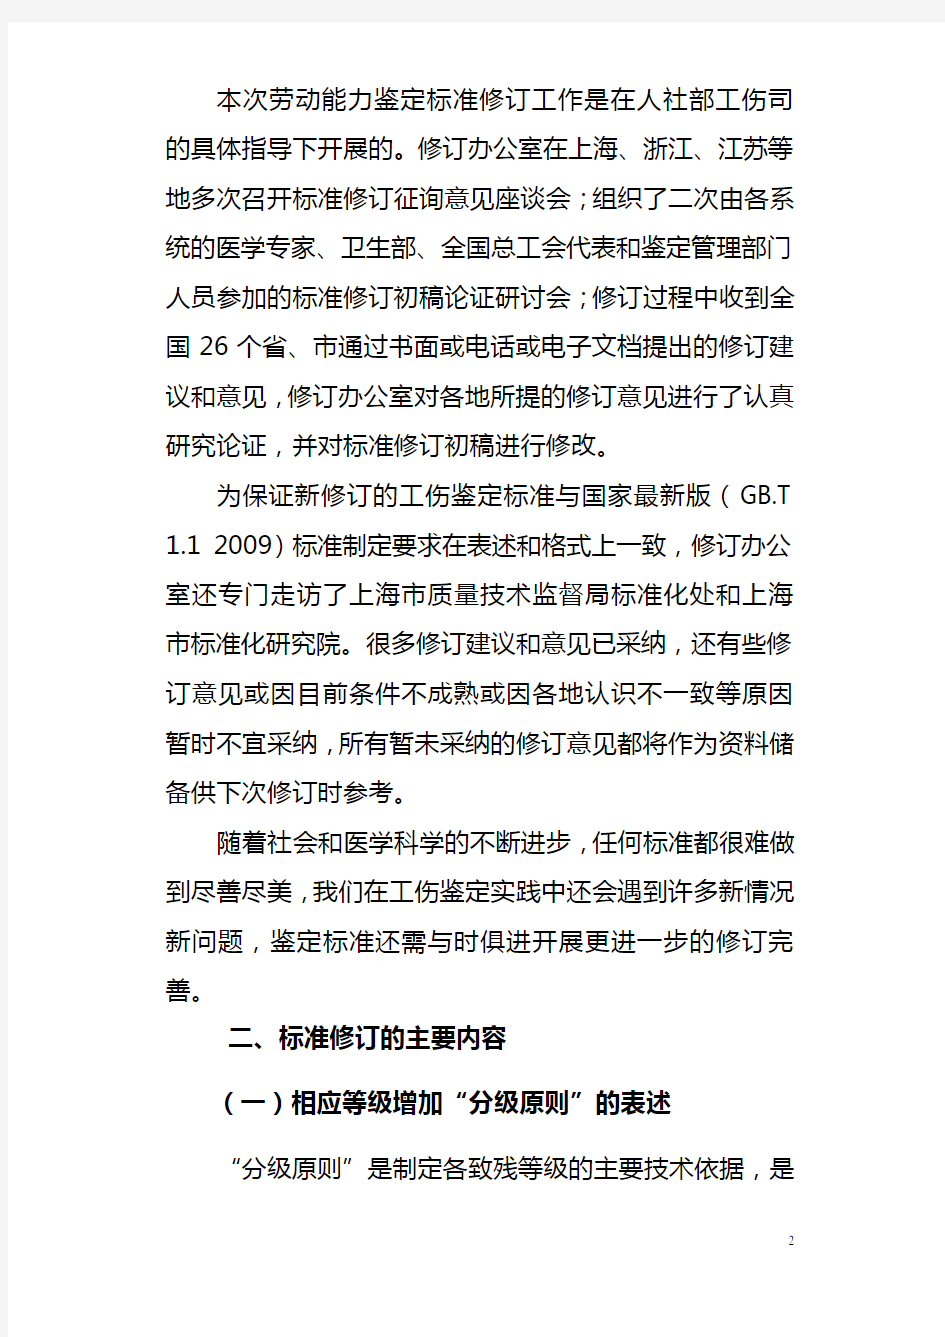 劳动能力鉴定标准-中华人民共和国人力资源和社会保障部